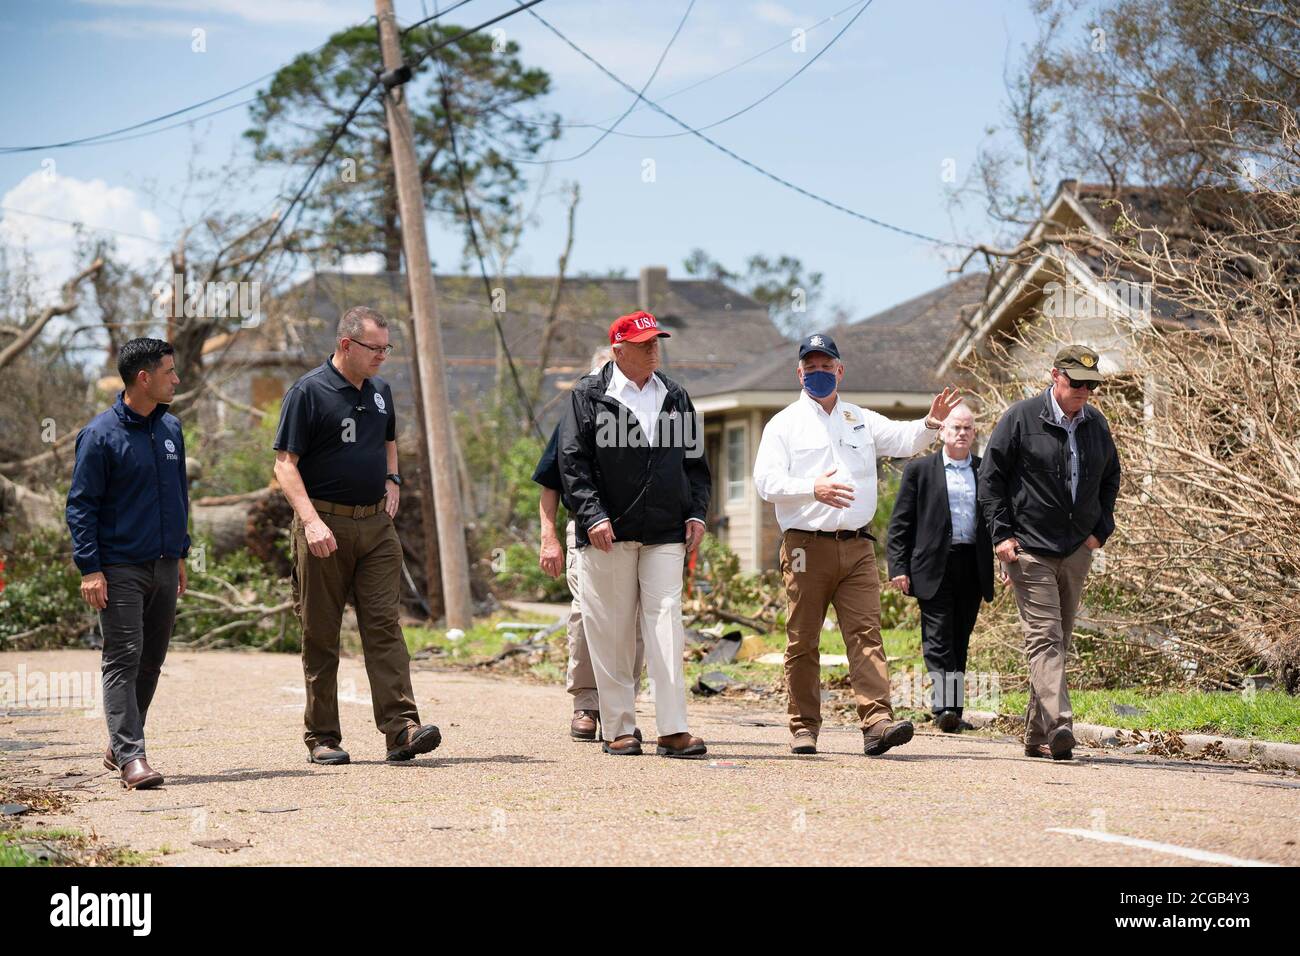 Le président Donald J. Trump visite un quartier le samedi 29 août 2020, à Lake Charles, en Louisiane, pour voir les dommages causés par l'ouragan Laura. (ÉTATS-UNIS) Banque D'Images